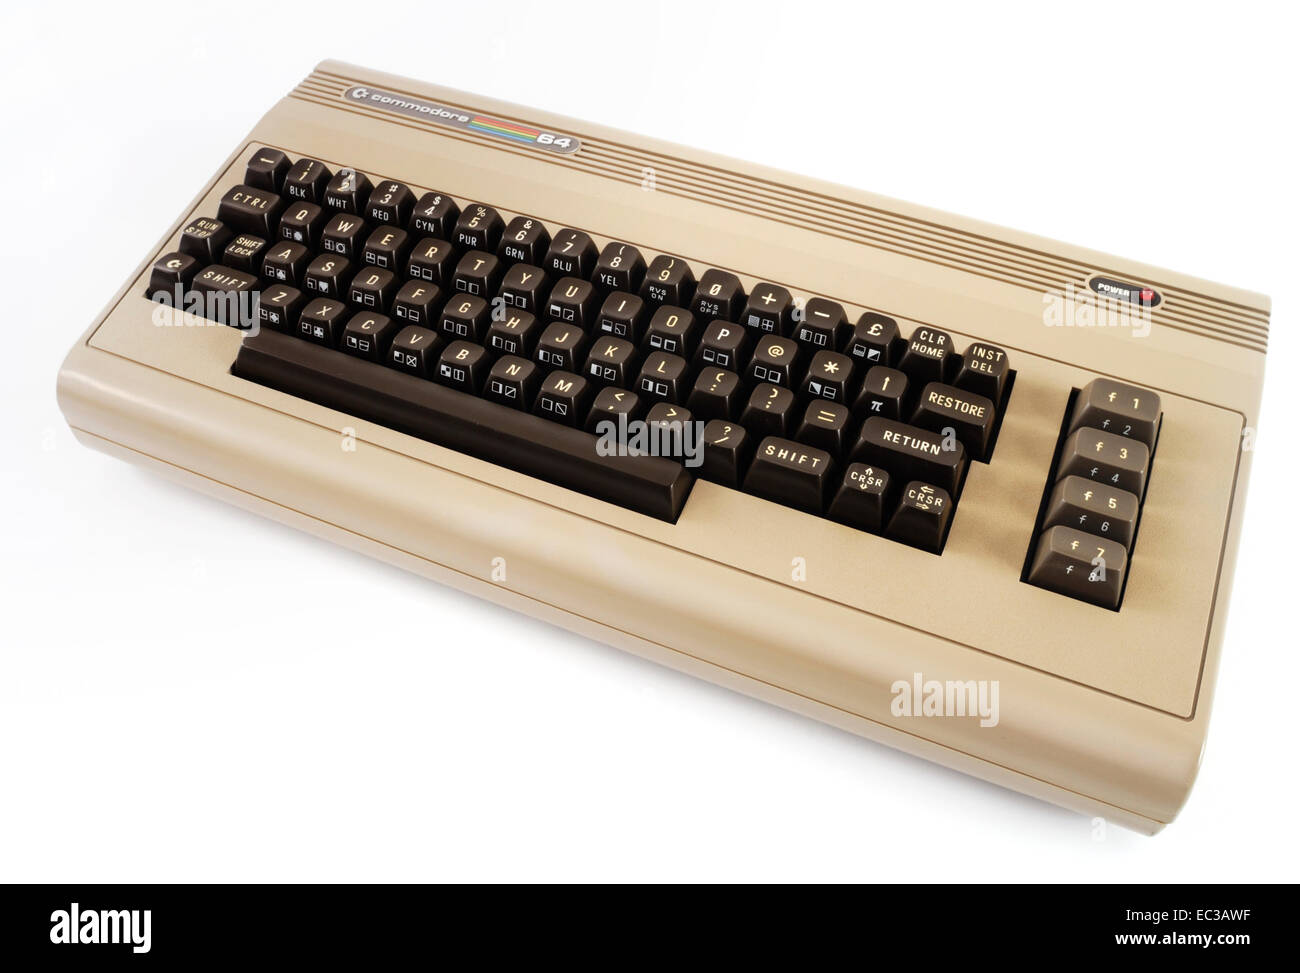 Commodore C64, 64er, 8 Bit Homecomputer, 1986 Stock Photo